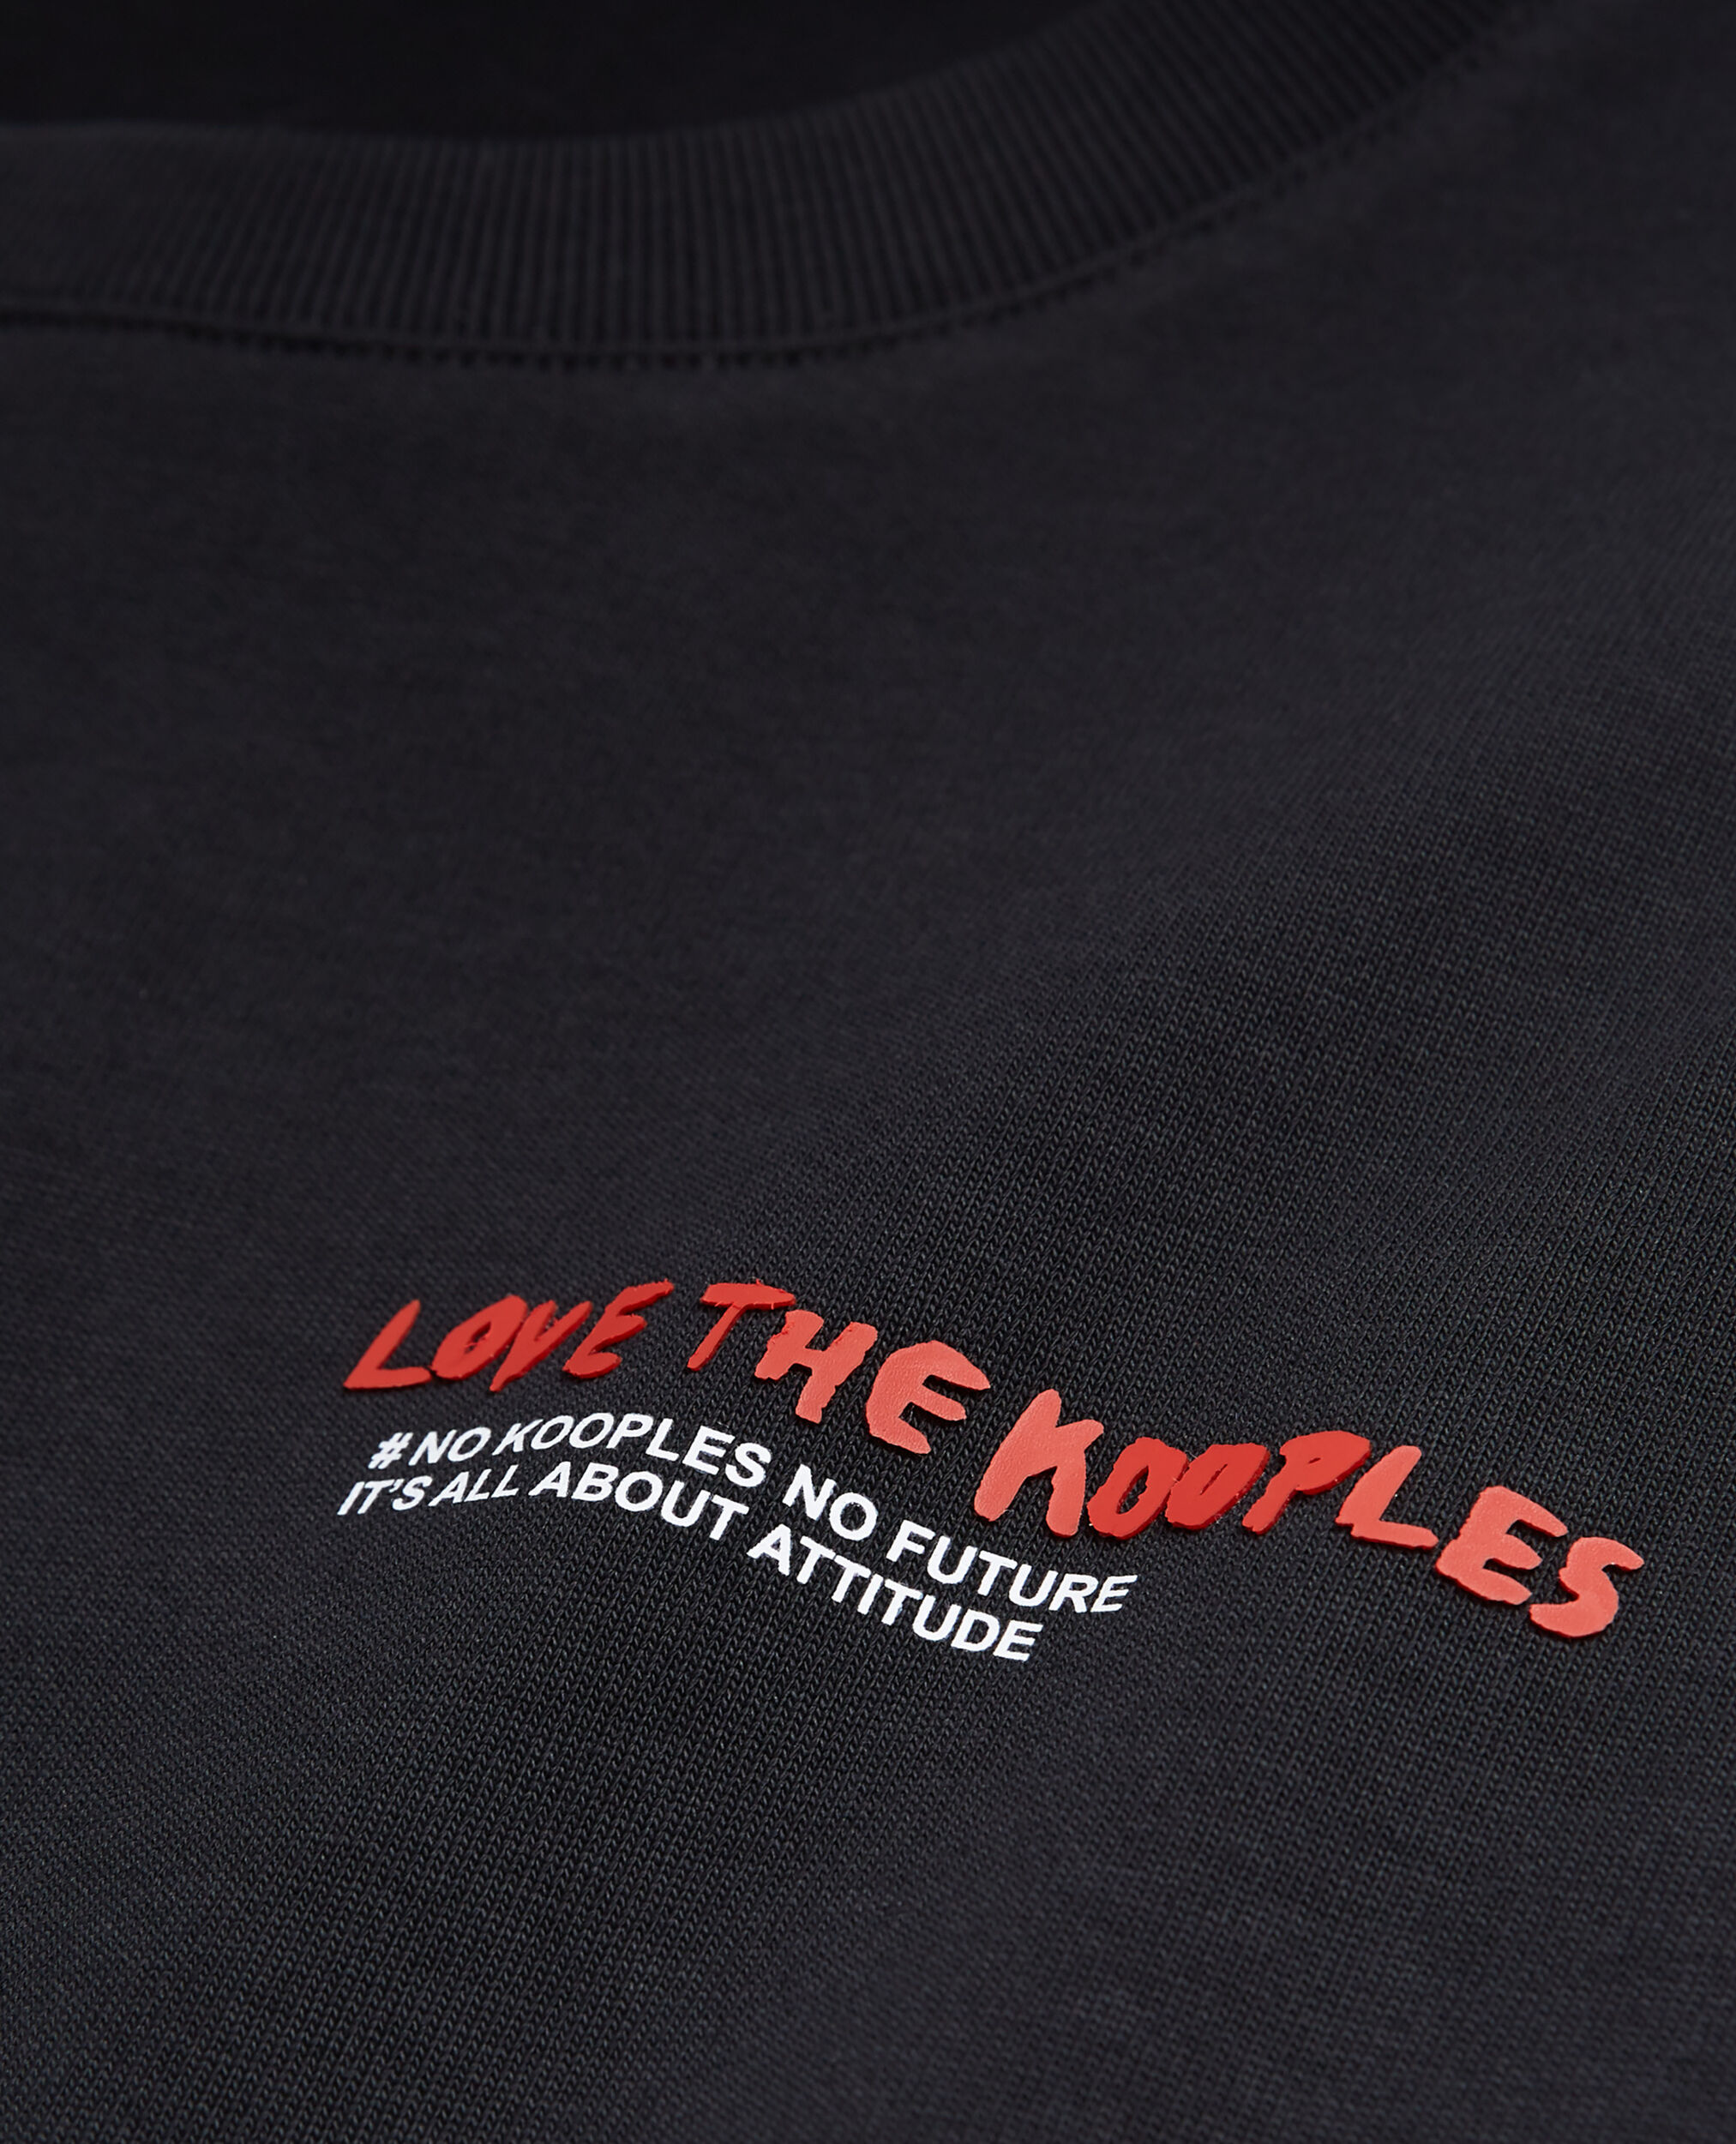 T-shirt Femme I Love Kooples noir, BLACK, hi-res image number null